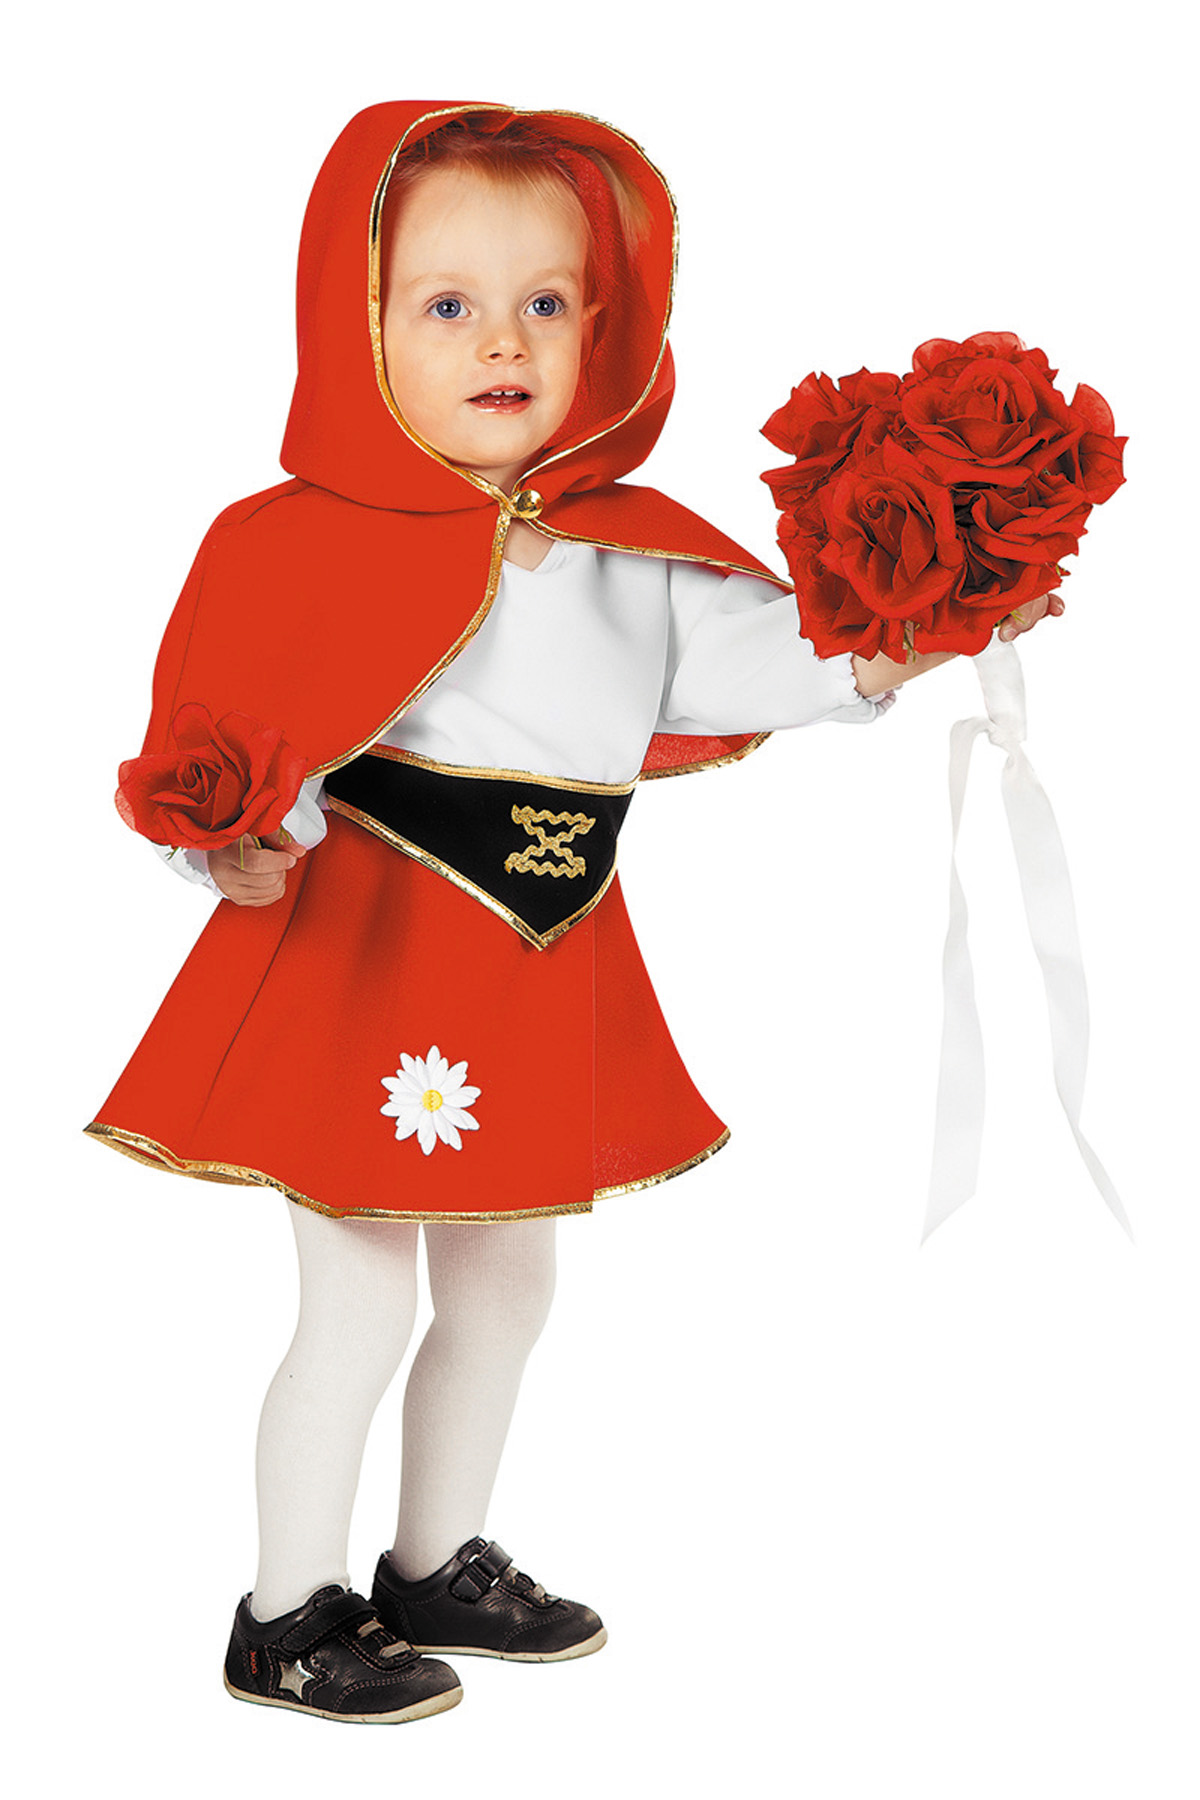 Positief Dosering insluiten Roodkapje baby kostuum - Feesthuis